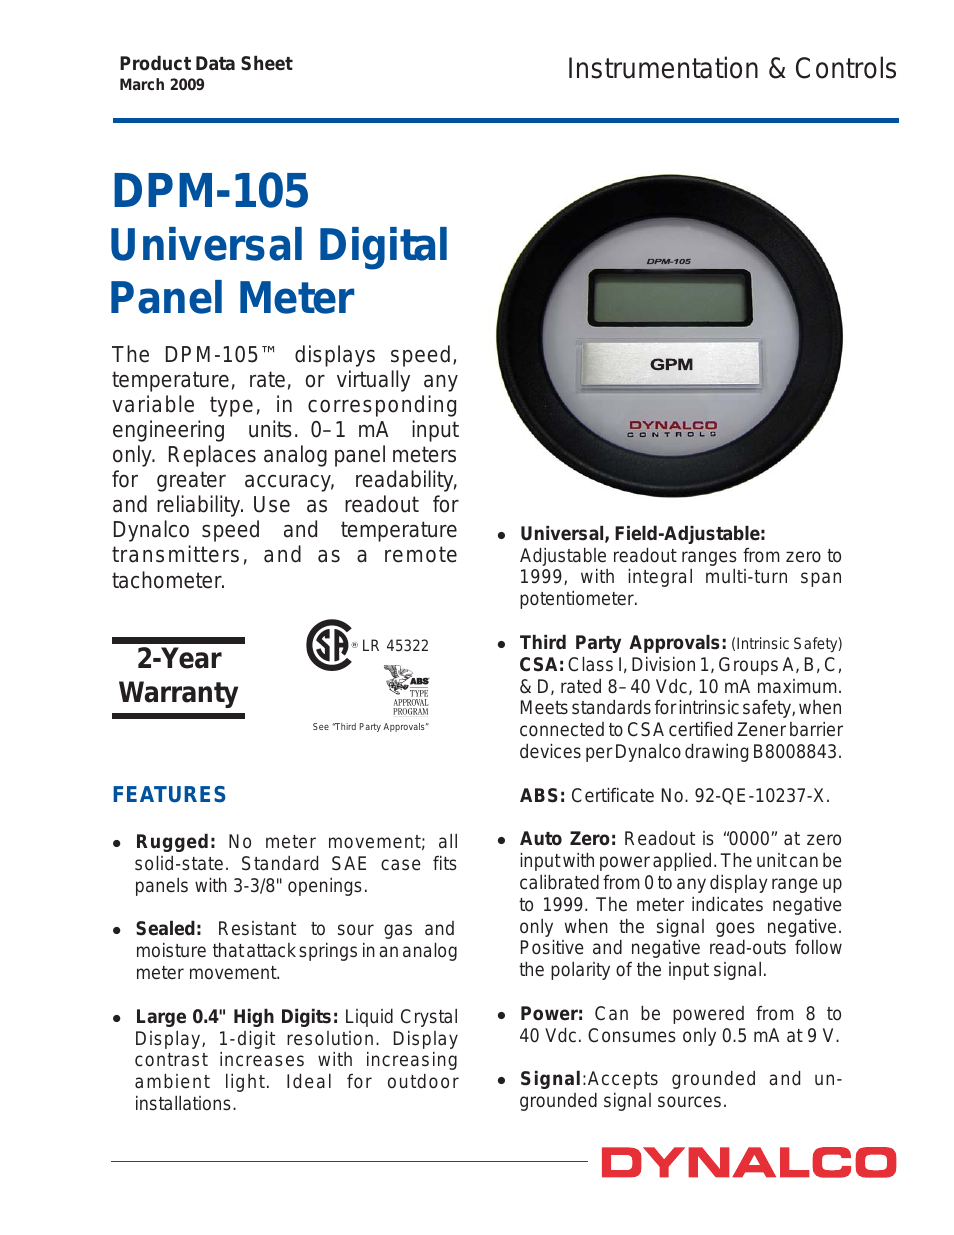 DPM-105 Panel Meter